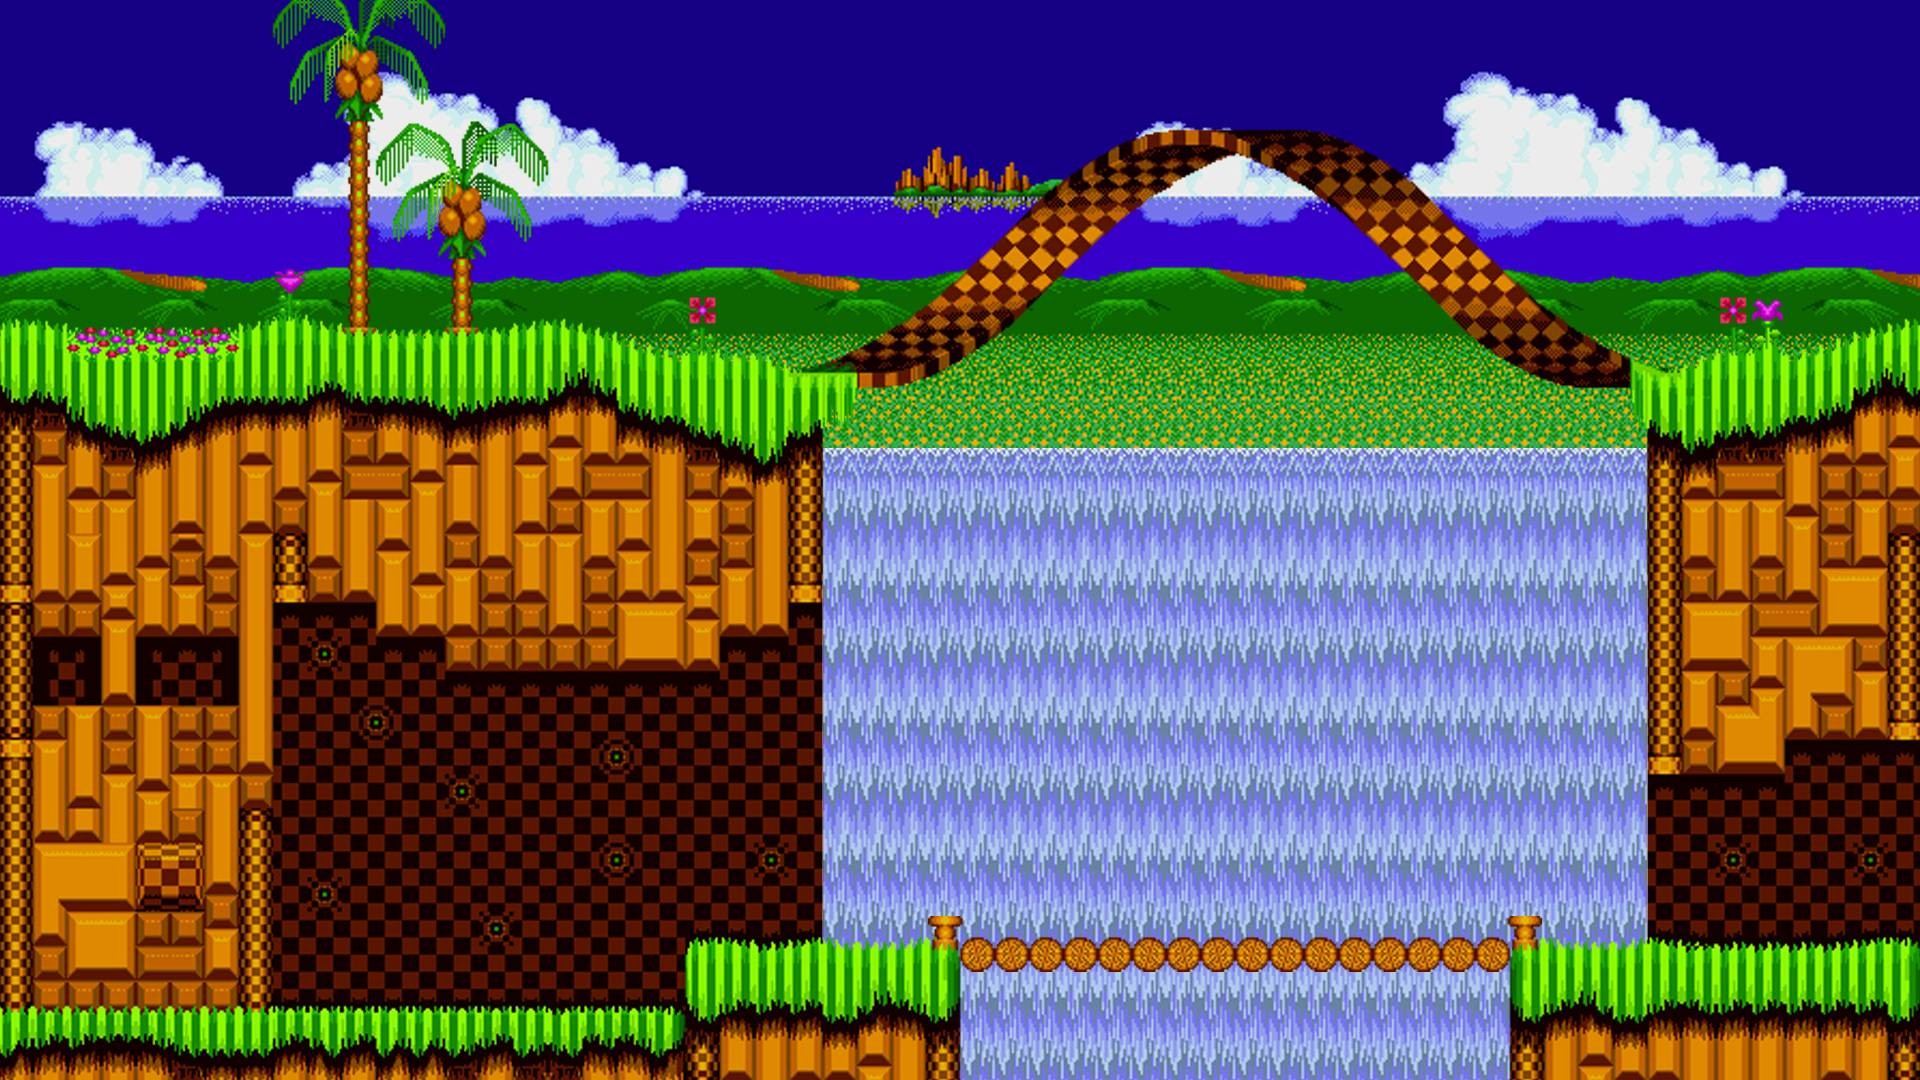 Hintergrundbilder về Sonic là một chủ đề phổ biến trong cộng đồng game thủ. Với một loạt các bối cảnh đầy màu sắc, Sonic và các nhân vật khác có thể được tìm thấy trong các hình nền này. Nếu bạn muốn khám phá thế giới Sonic và tìm kiếm những bức ảnh nền đẹp, hãy xem hình ảnh liên quan đến \